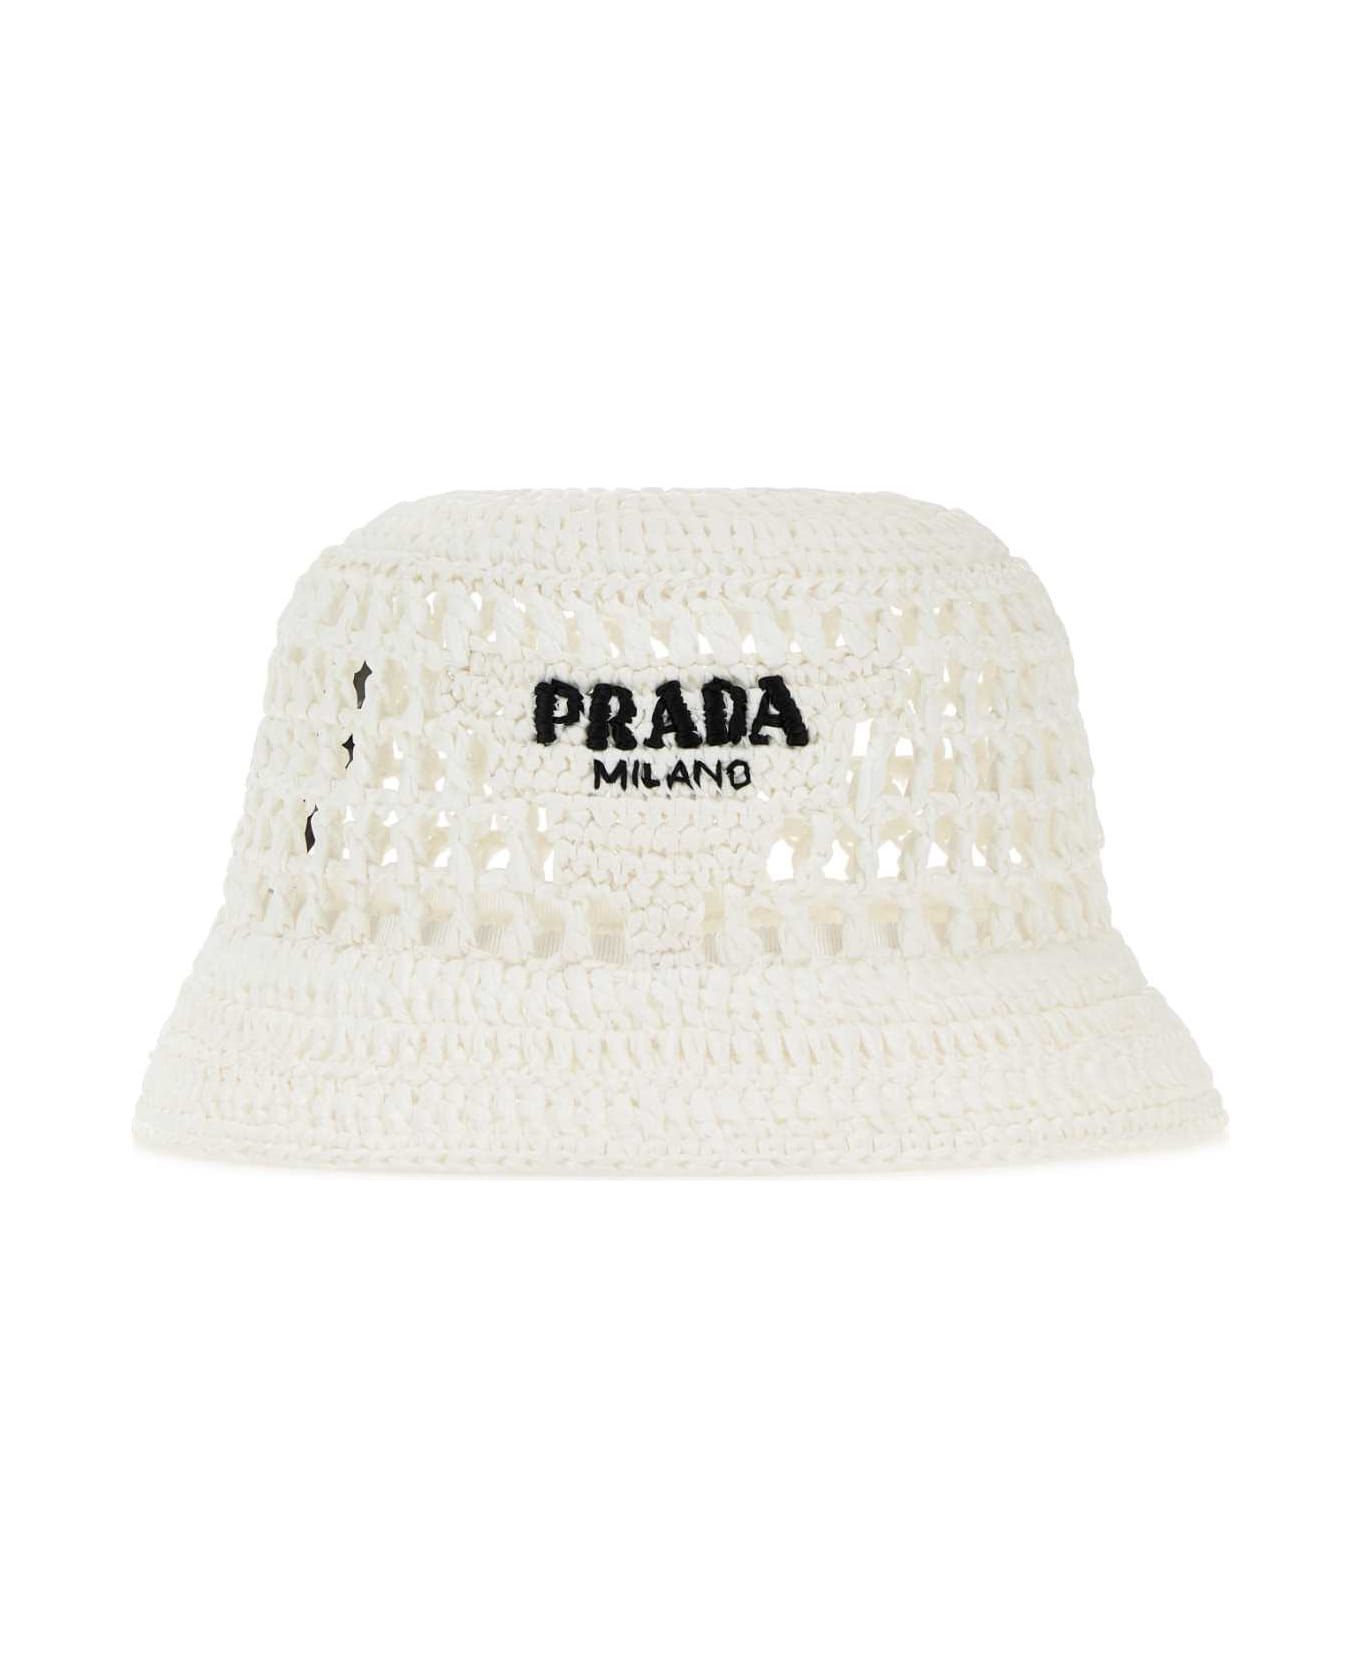 Prada White Raffia Bucket Hat - BIANCO ヘアアクセサリー